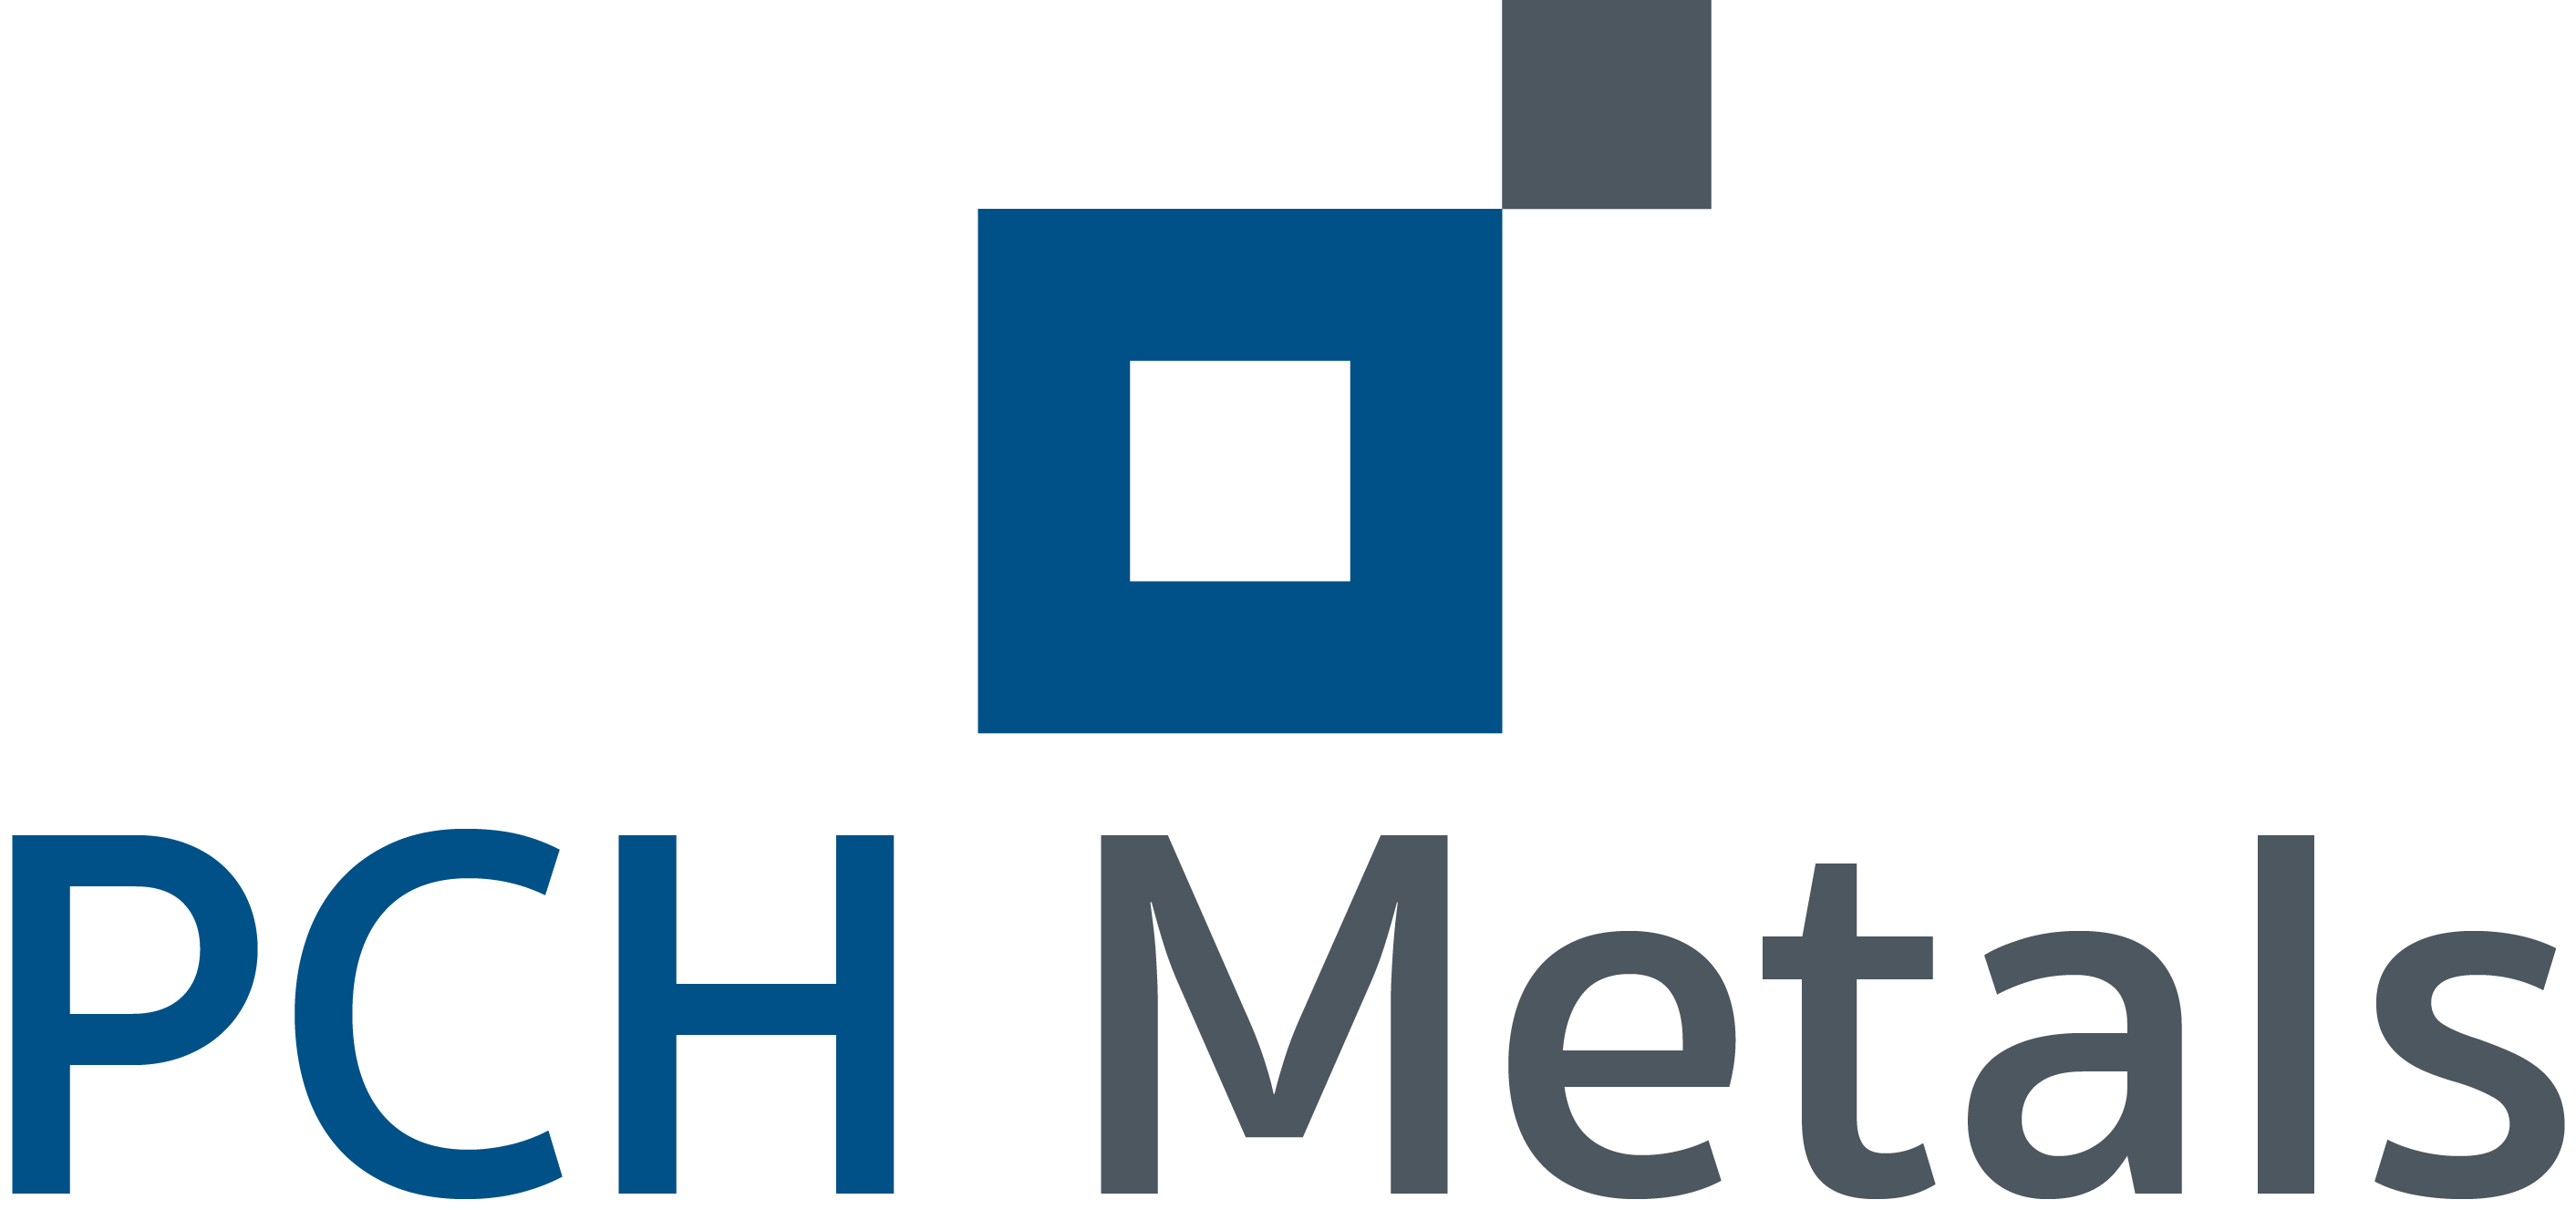 Blue Metal Logo - PCH Metals | PCH Metals conçoit et fabrique des produits à ...